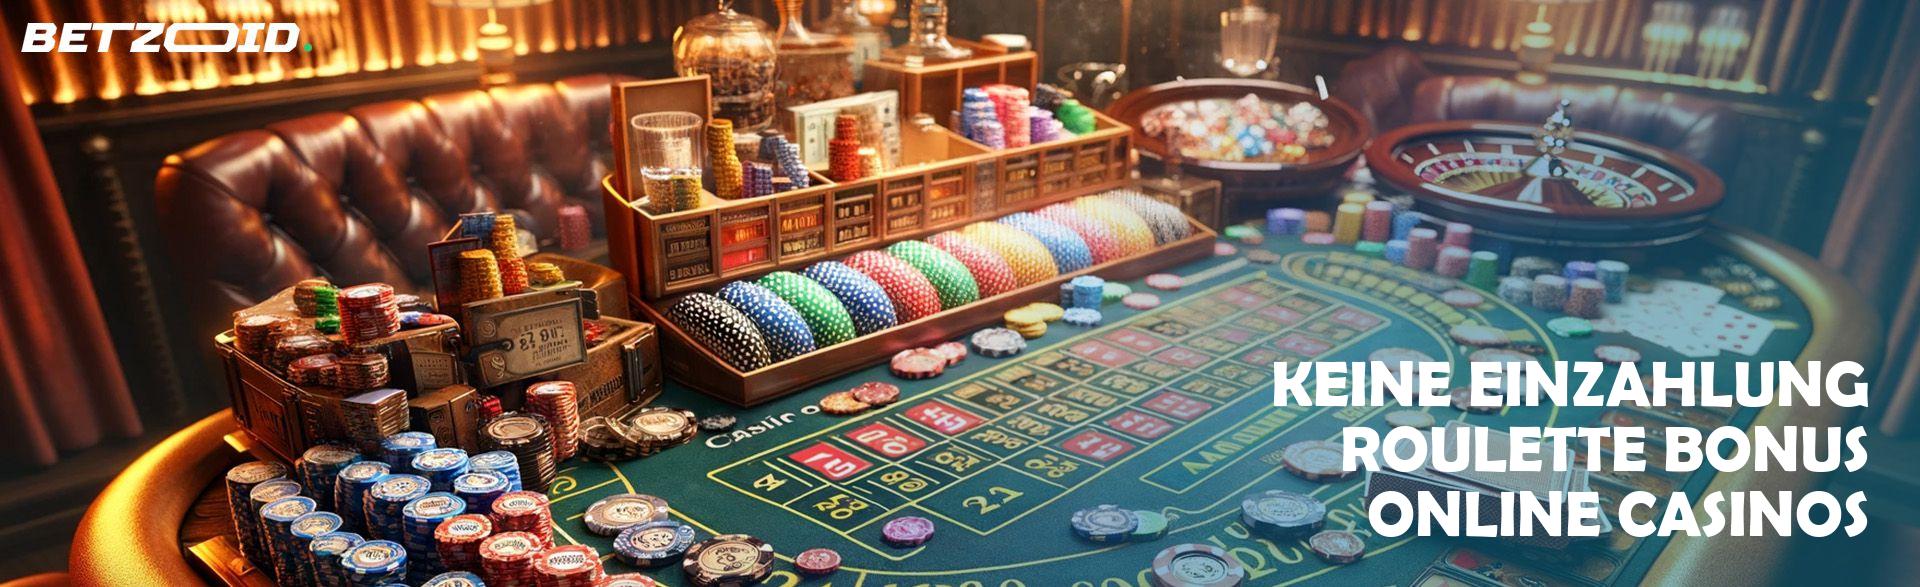 Keine Einzahlung Roulette Bonus Online Casinos.